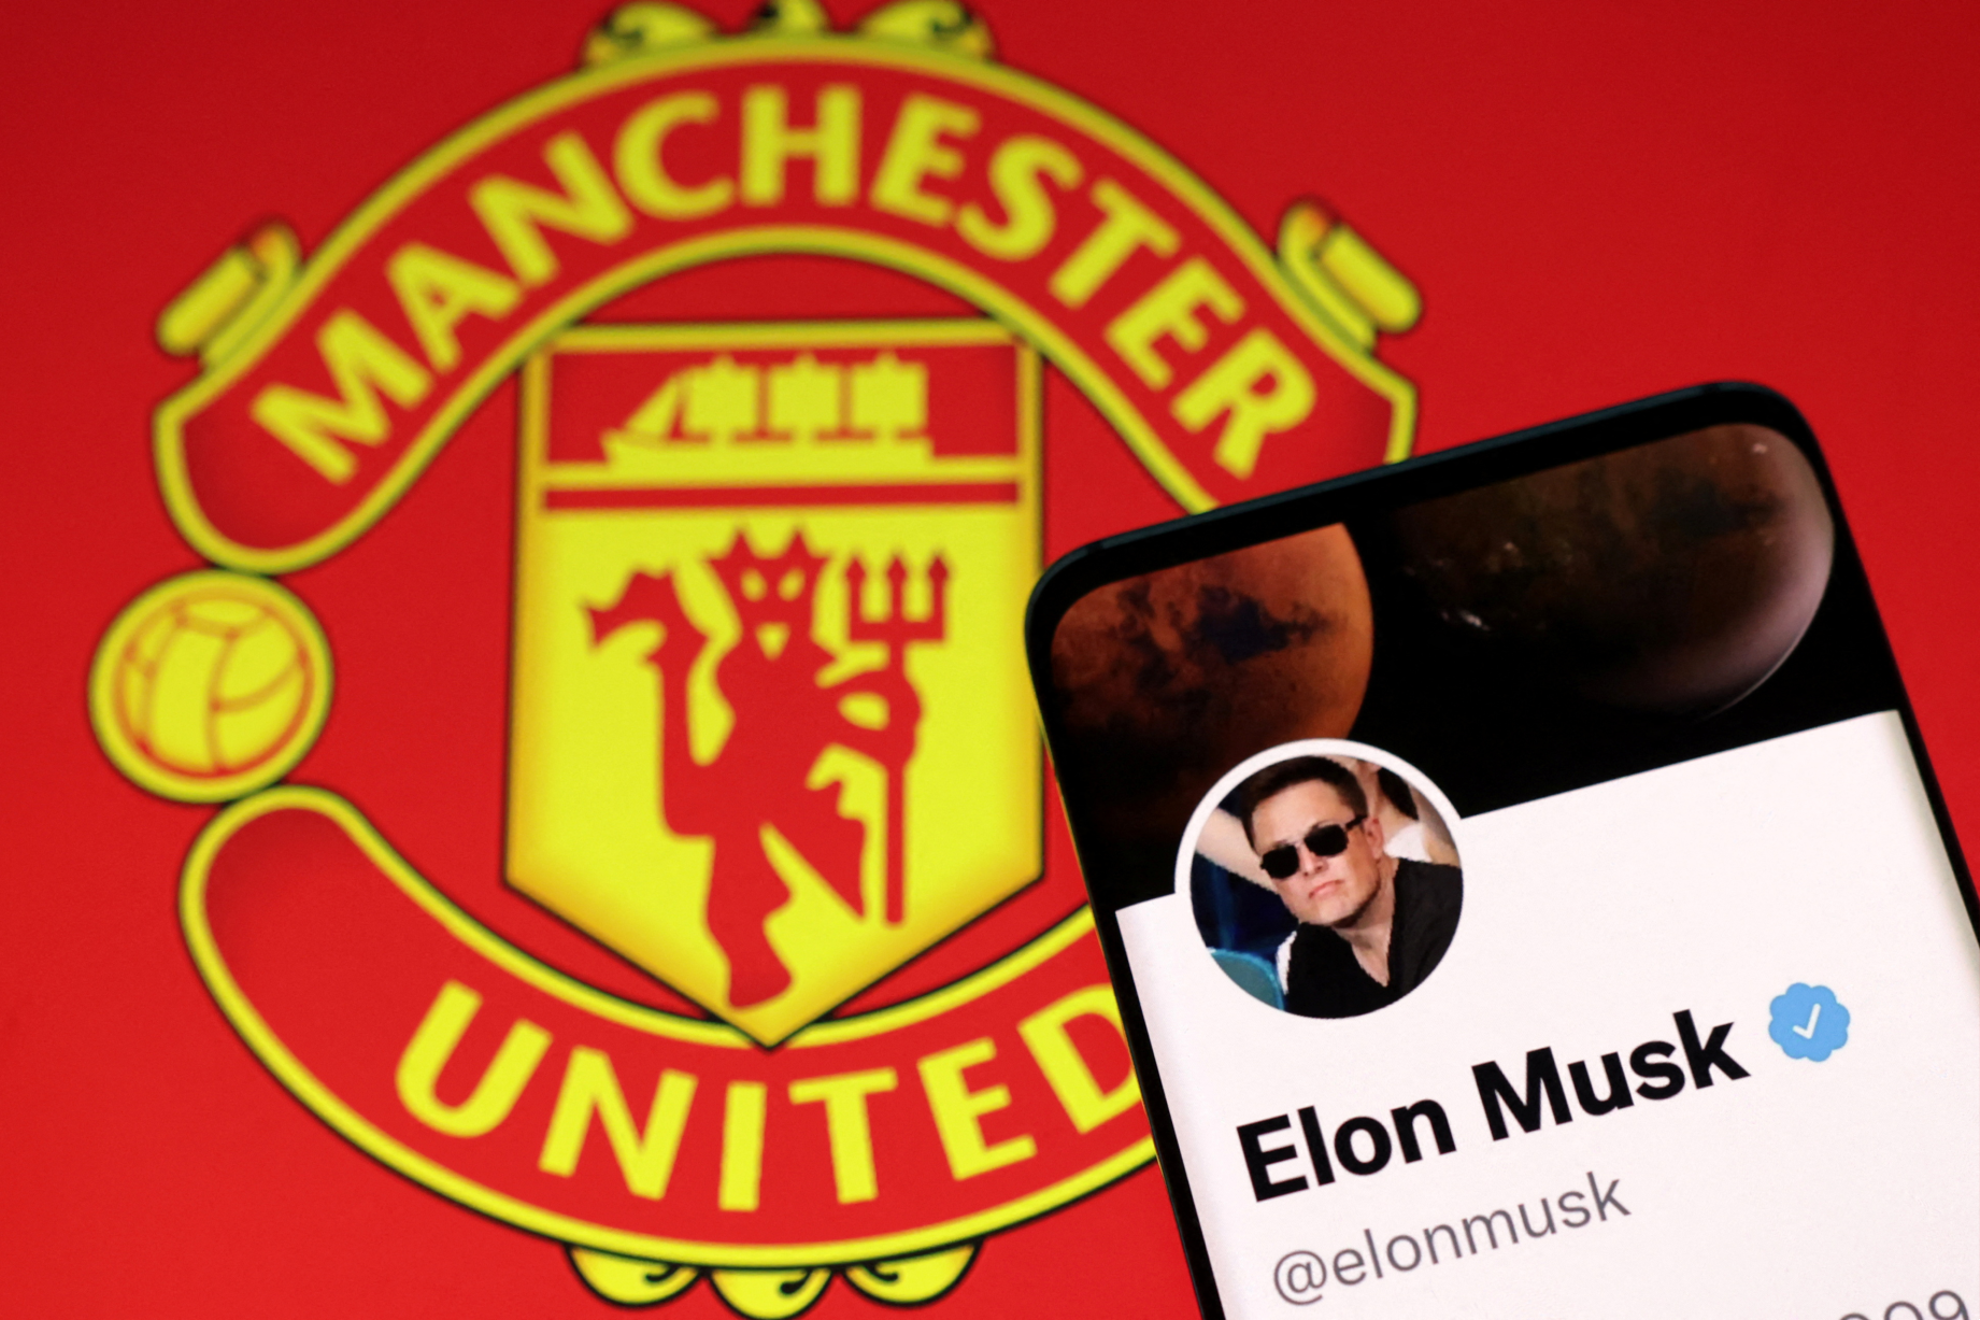 ¿Quiénes son los dueños del Manchester United? Elon Musk escribe en Twitter su interés en el equipo | Reuters